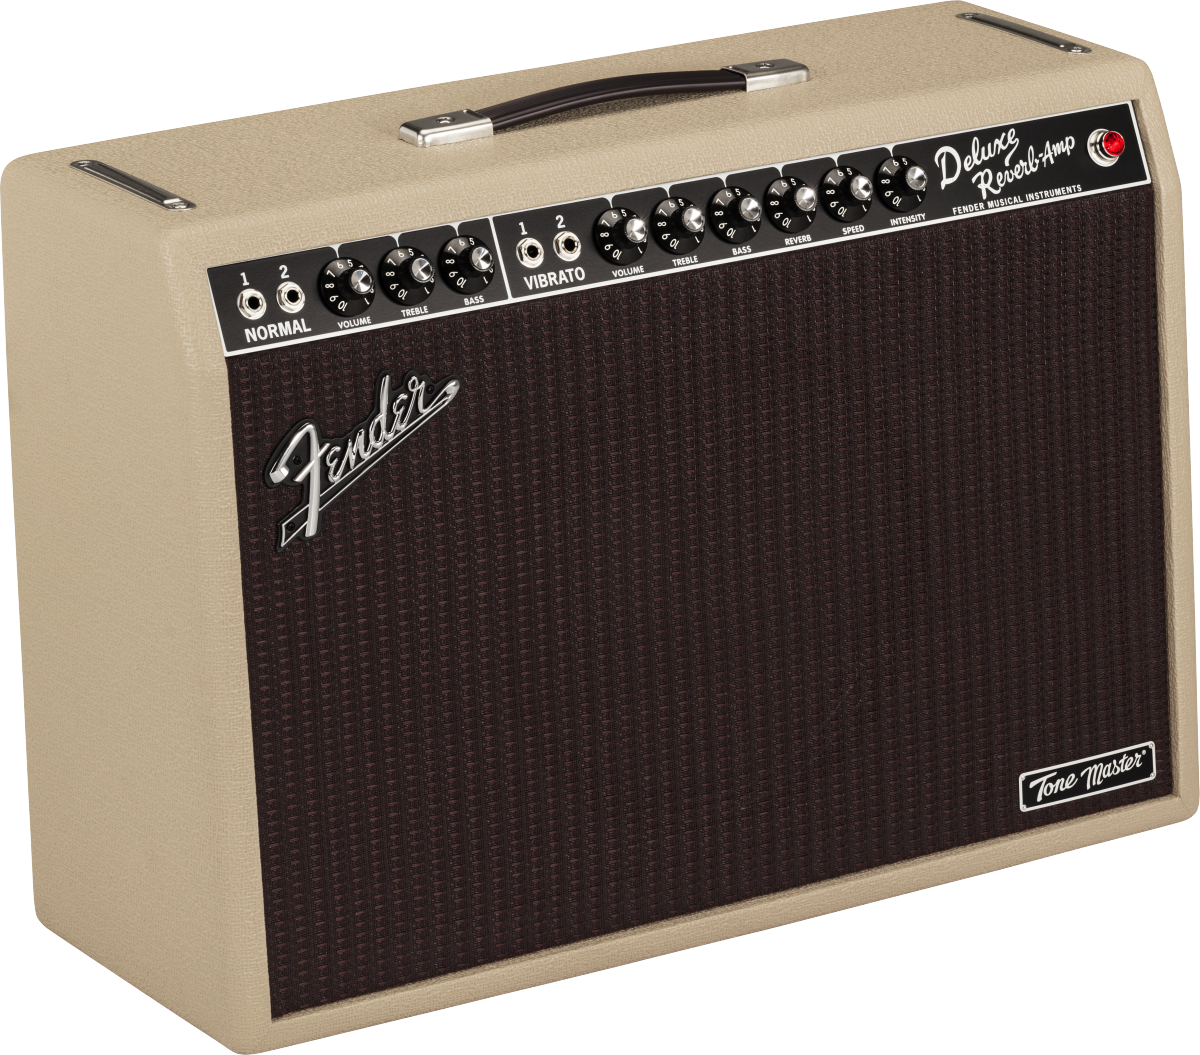 Fender Deluxe Reverb Tone Master 100w 1x12 Blonde - Ampli Guitare Électrique Combo - Main picture